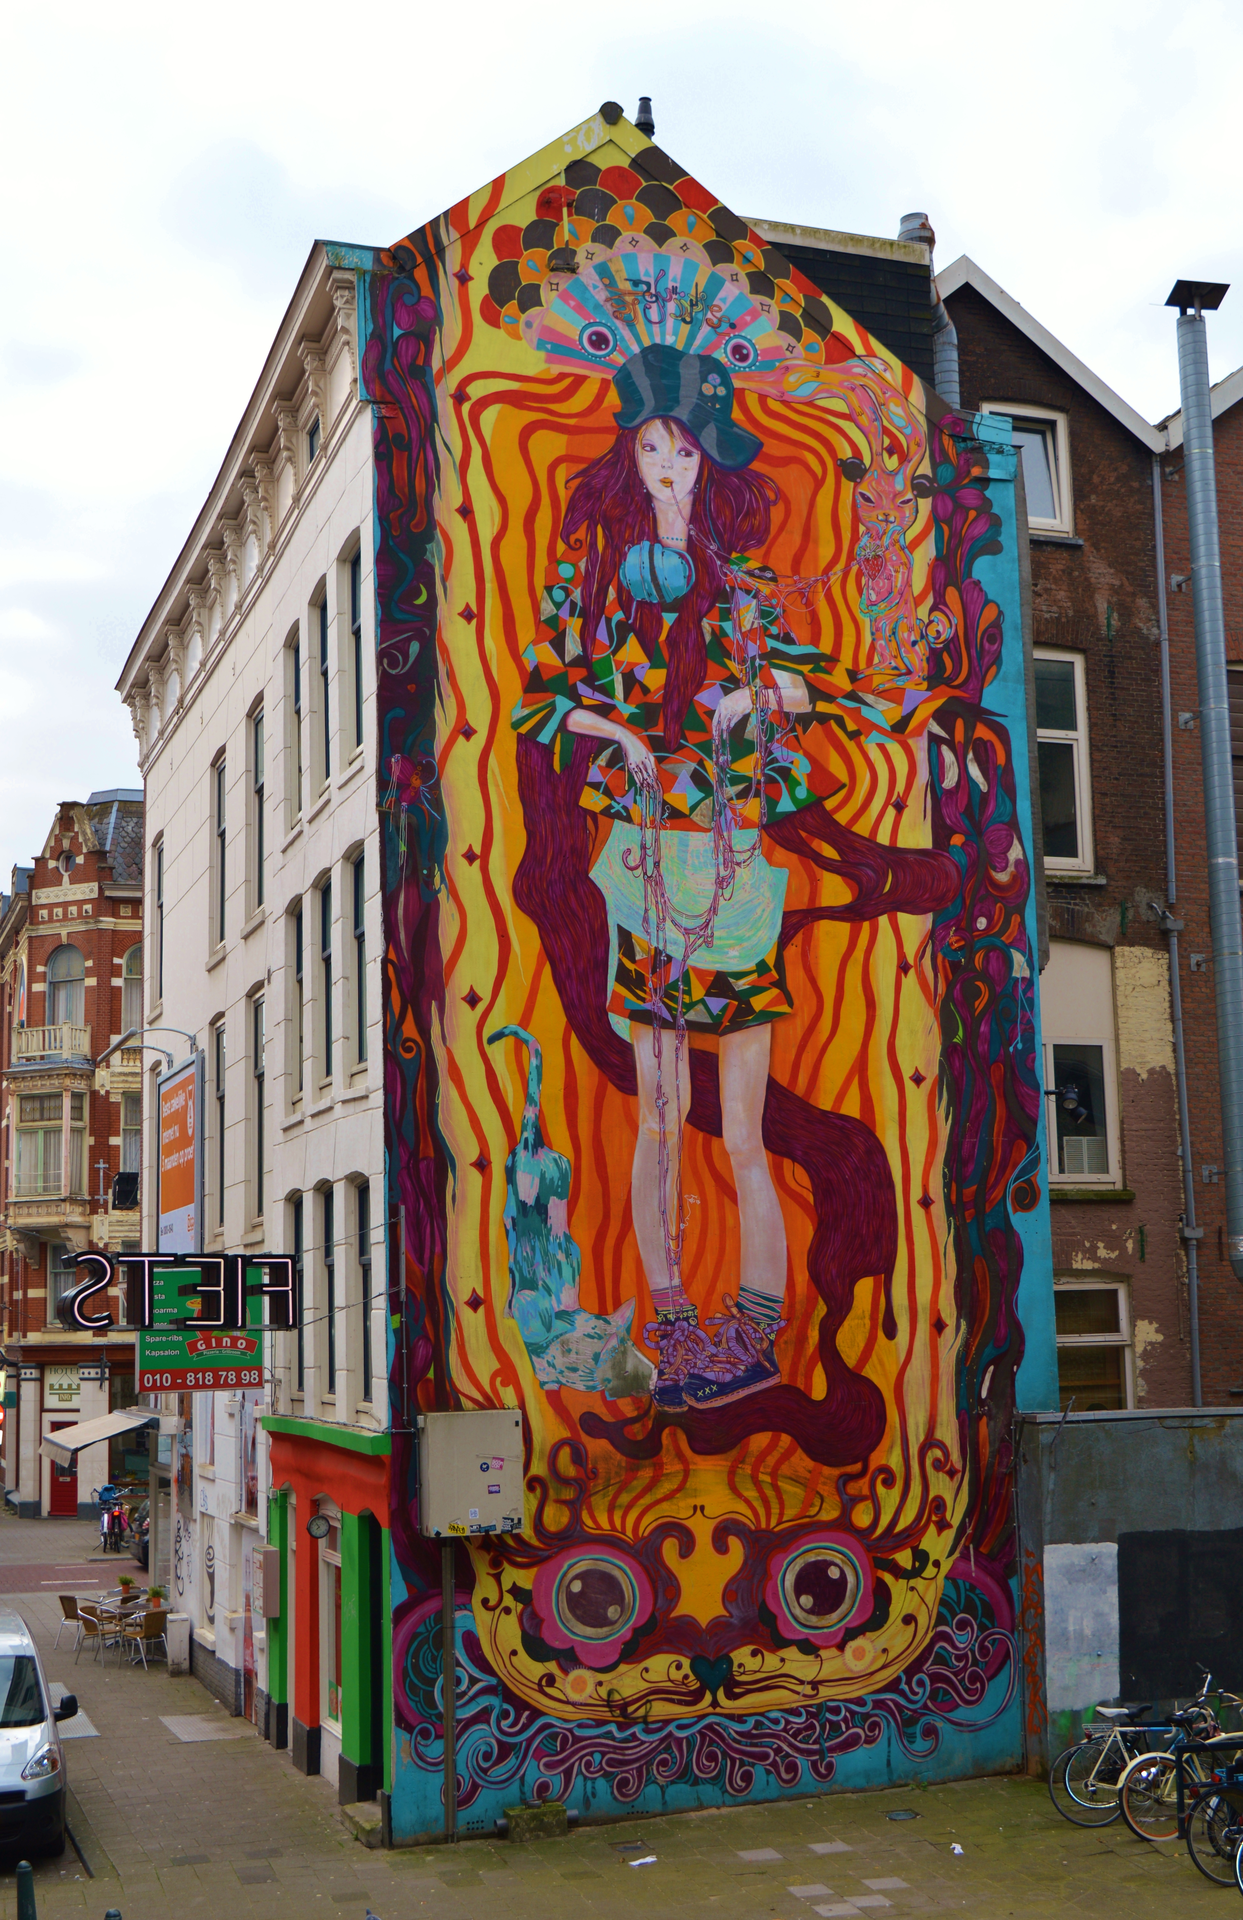 Oeuvre de Street Art réalisée par Ramon martins à Rotterdam